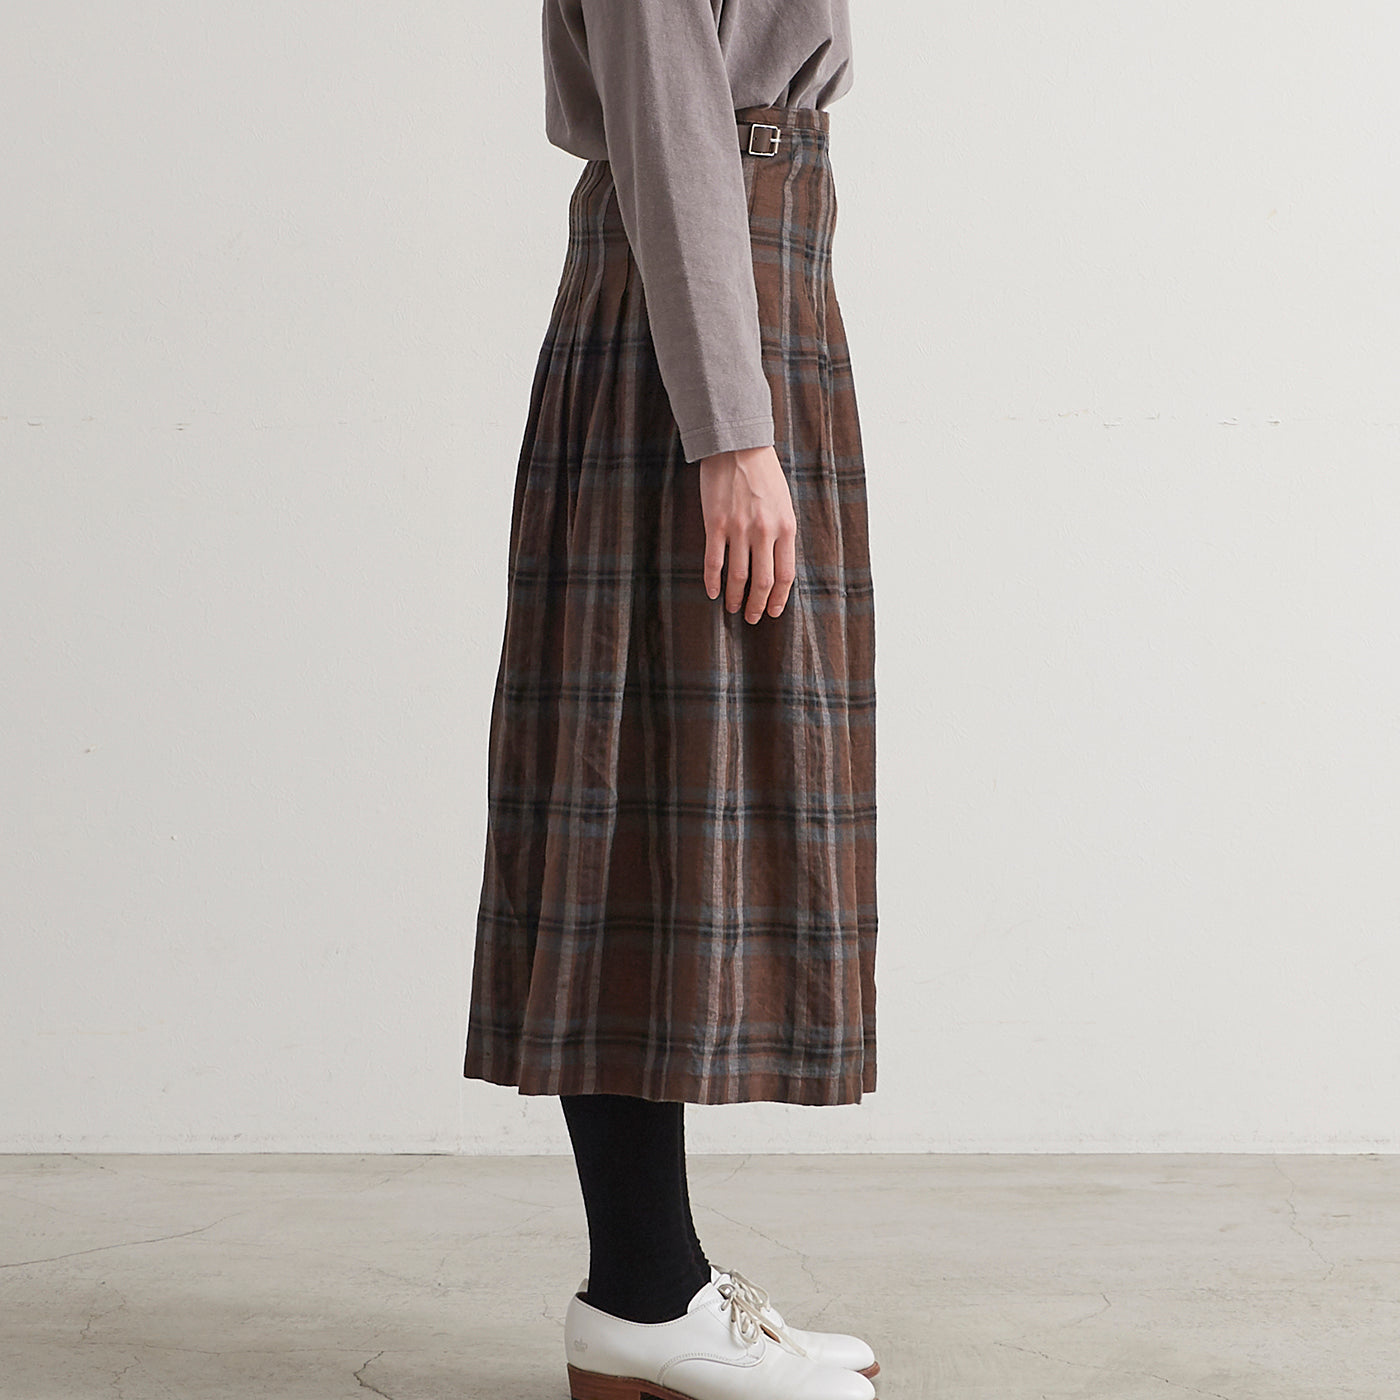 ［HEAVENLY ヘブンリー］ #010 Linen Check Kilt Skirt / リネン チェック キルト スカート - 2348101 -